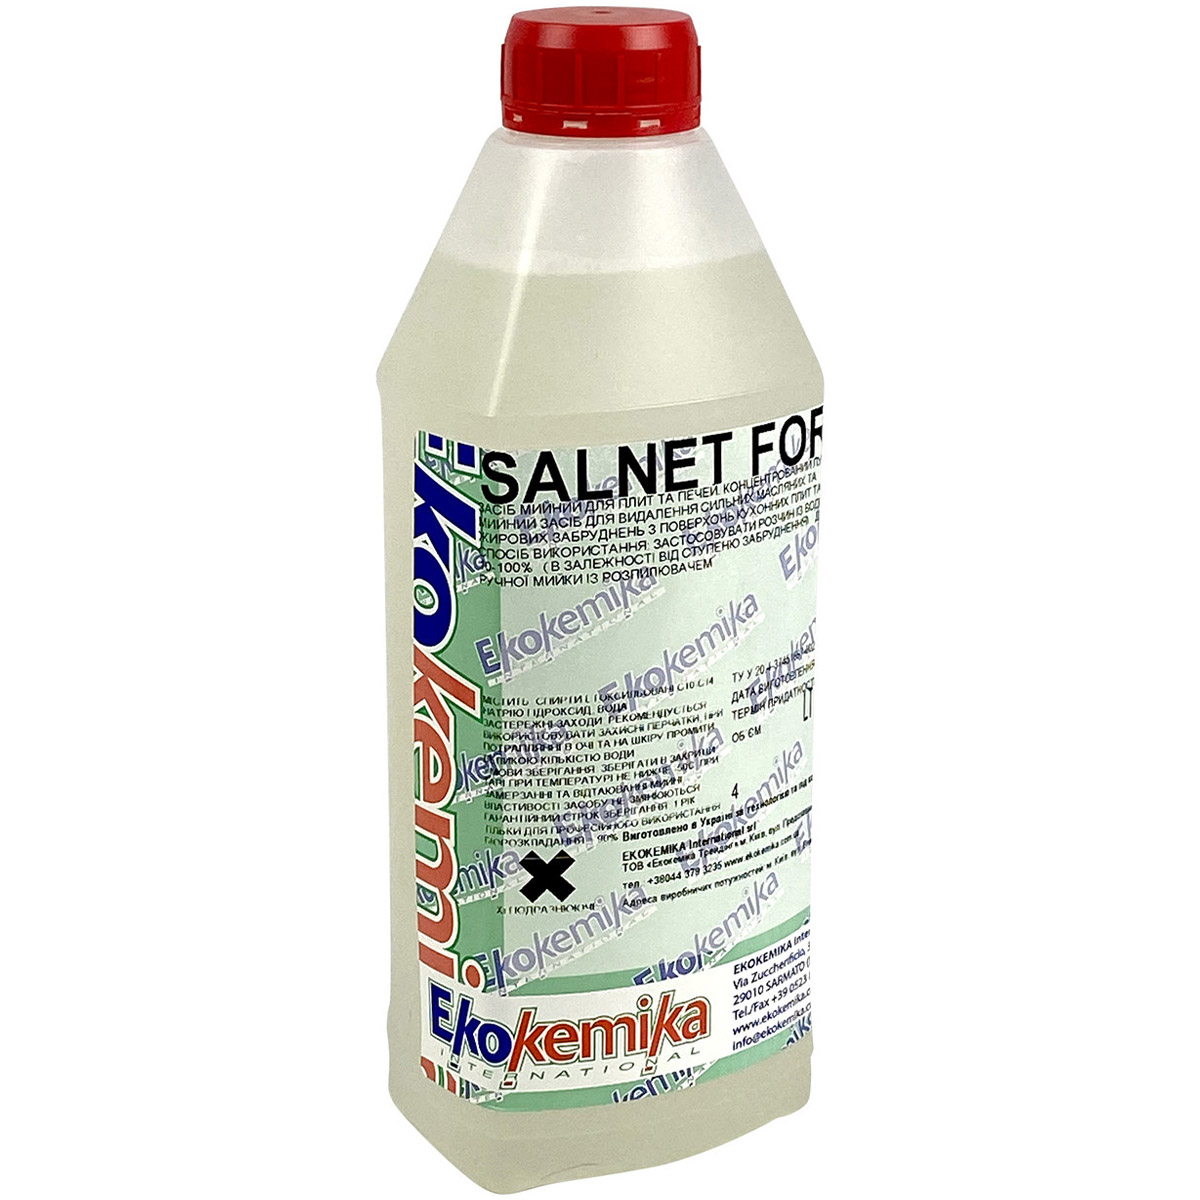 Средство для очистки Ekokemika Salnet For для духовых шкафов, микроволновых печей, грилей и поверхностей плит 1 л - фото 1